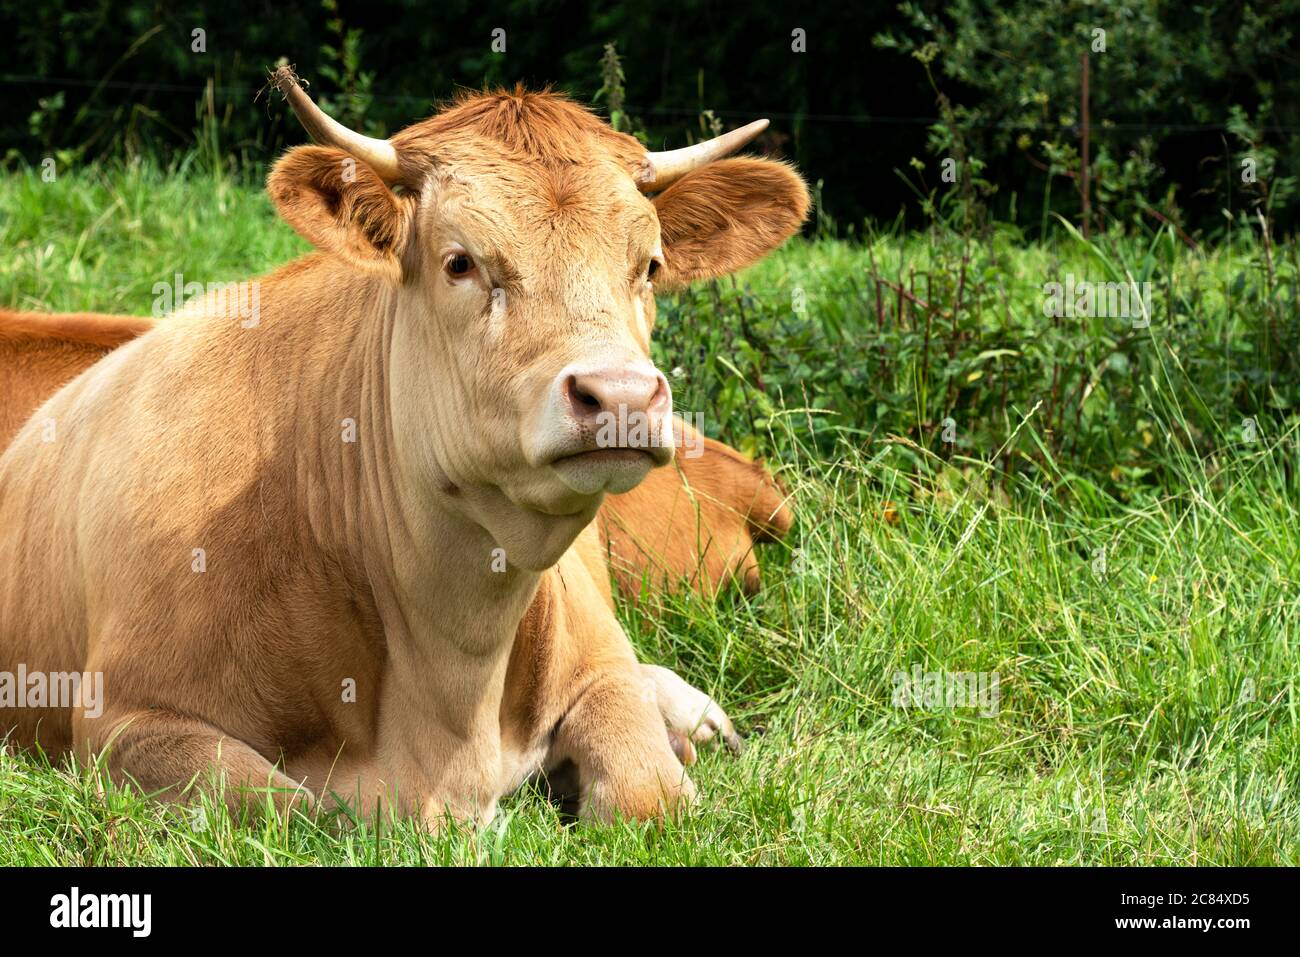 Giovane mucca marrone chiaro giace rilassato nell'erba. Una bella scena. Foto Stock